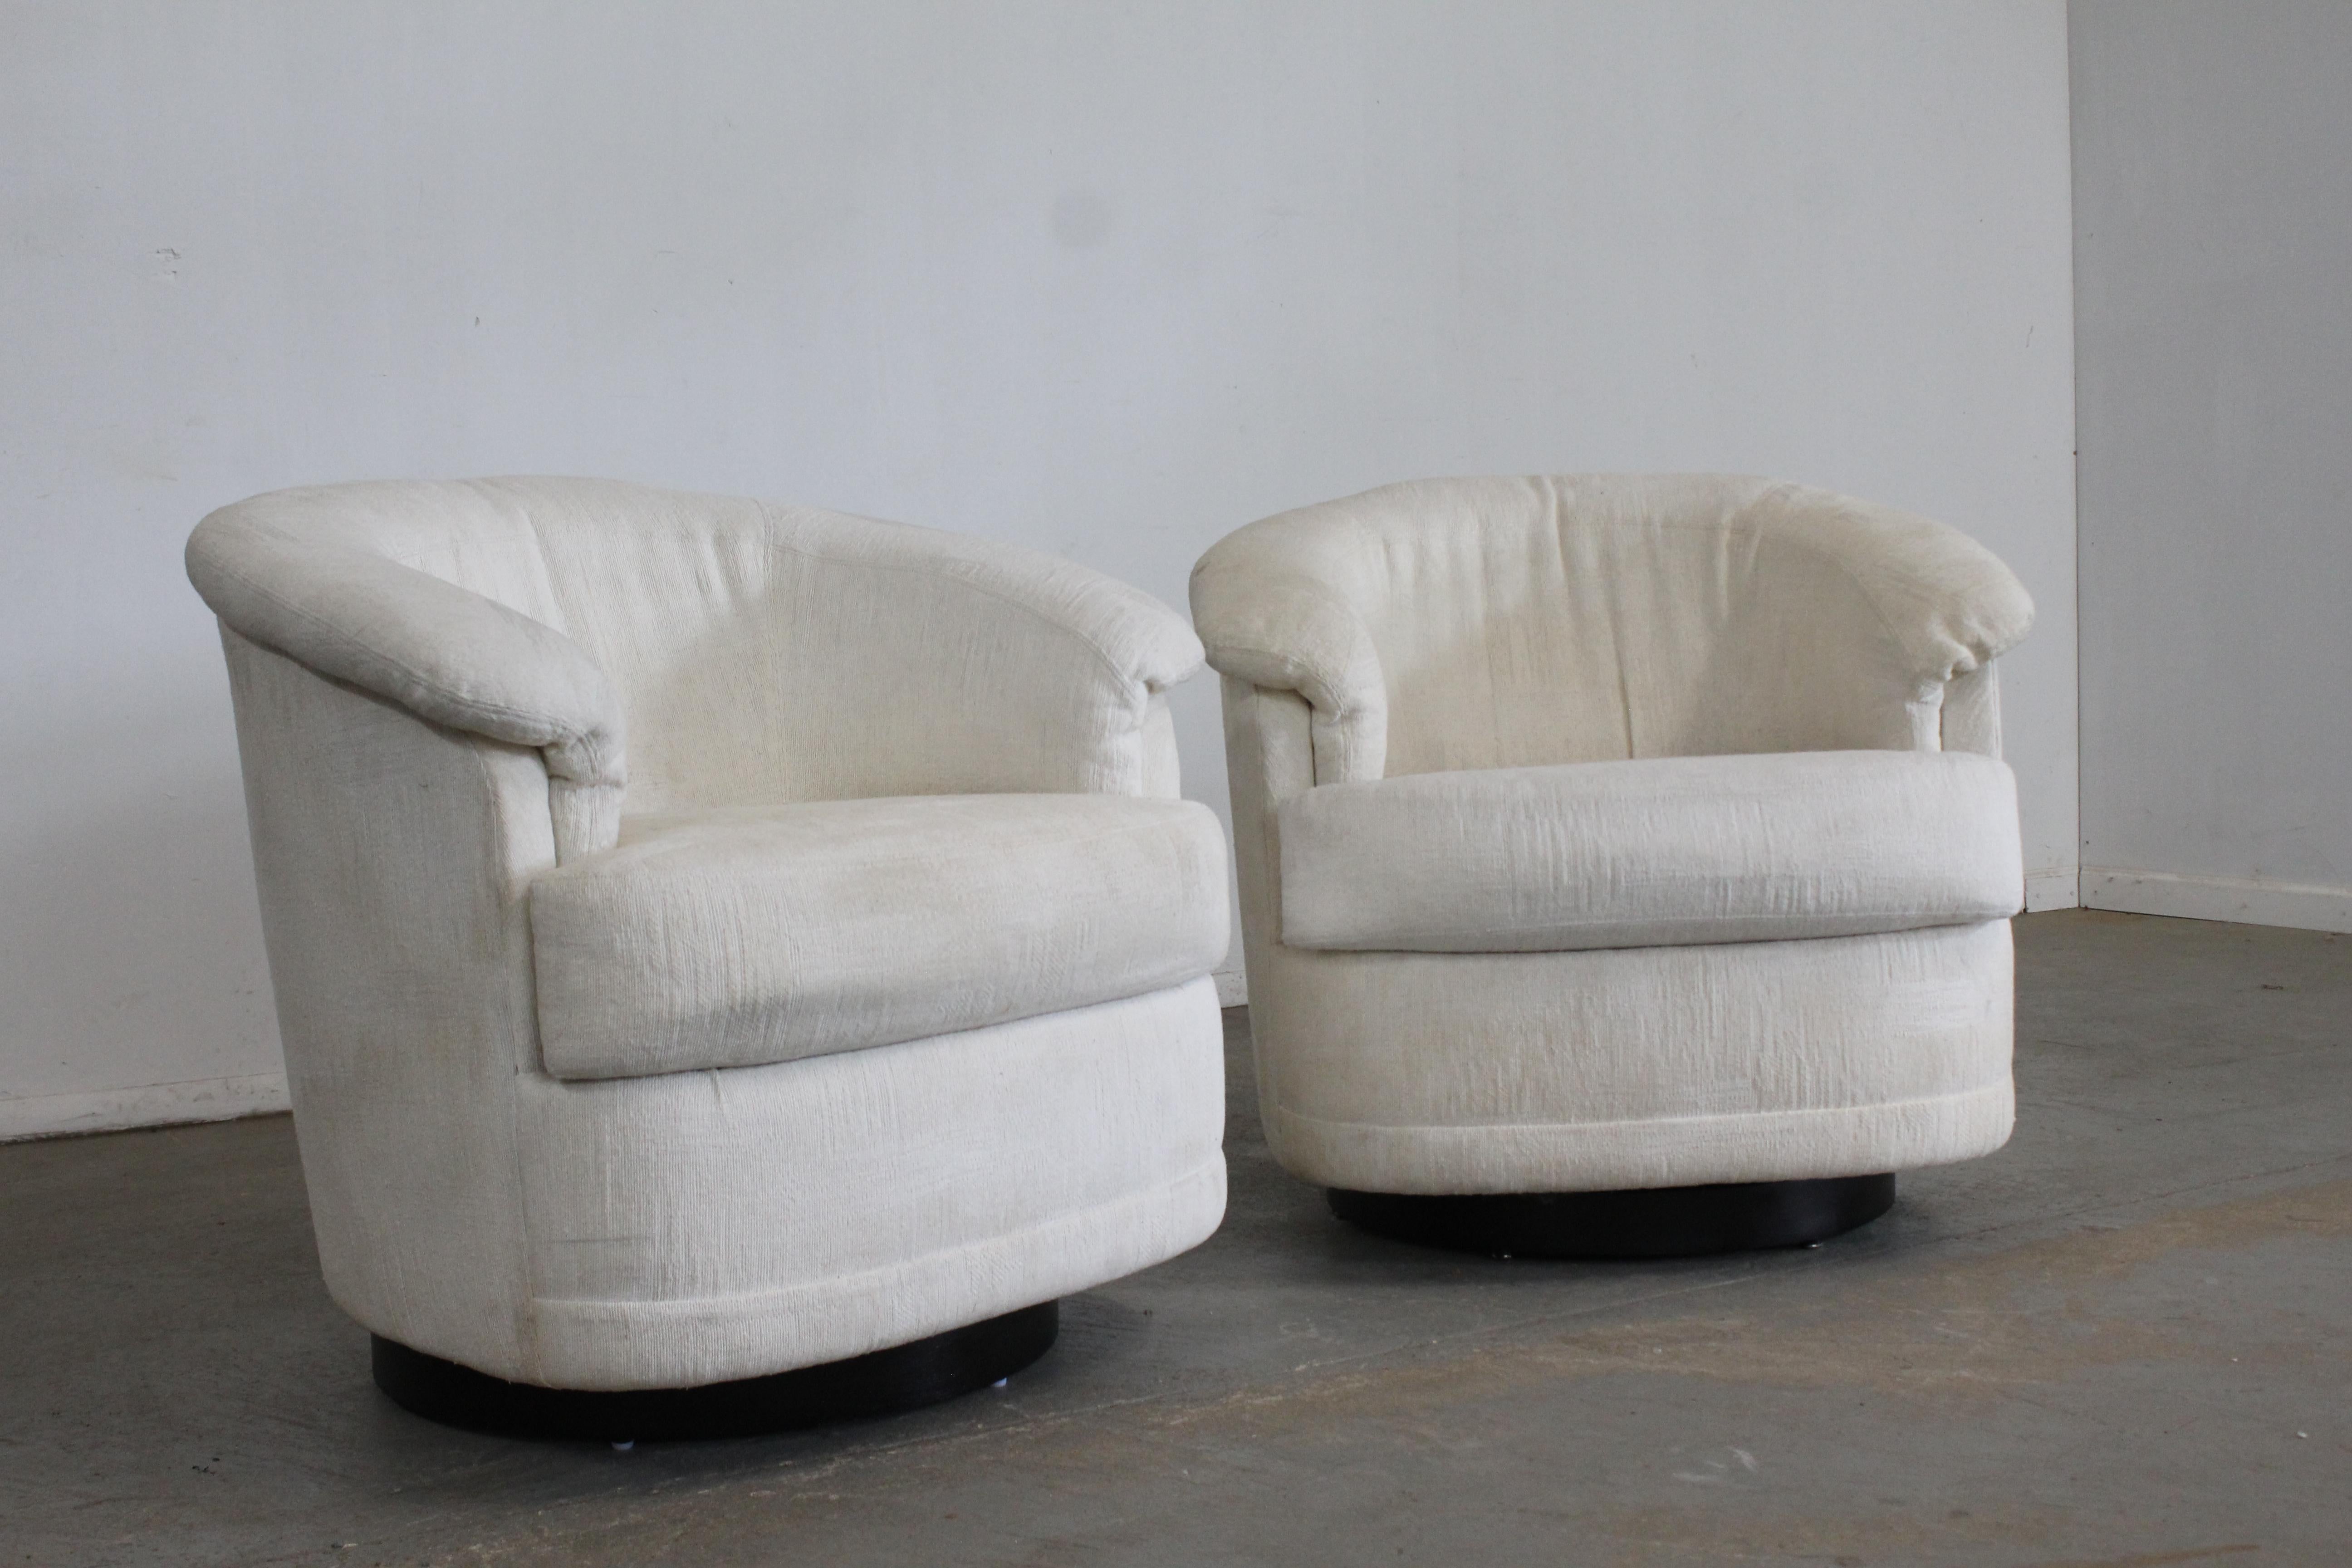 Paire de fauteuils club pivotants de style Milo Baughman de style moderne du milieu du siècle dernier